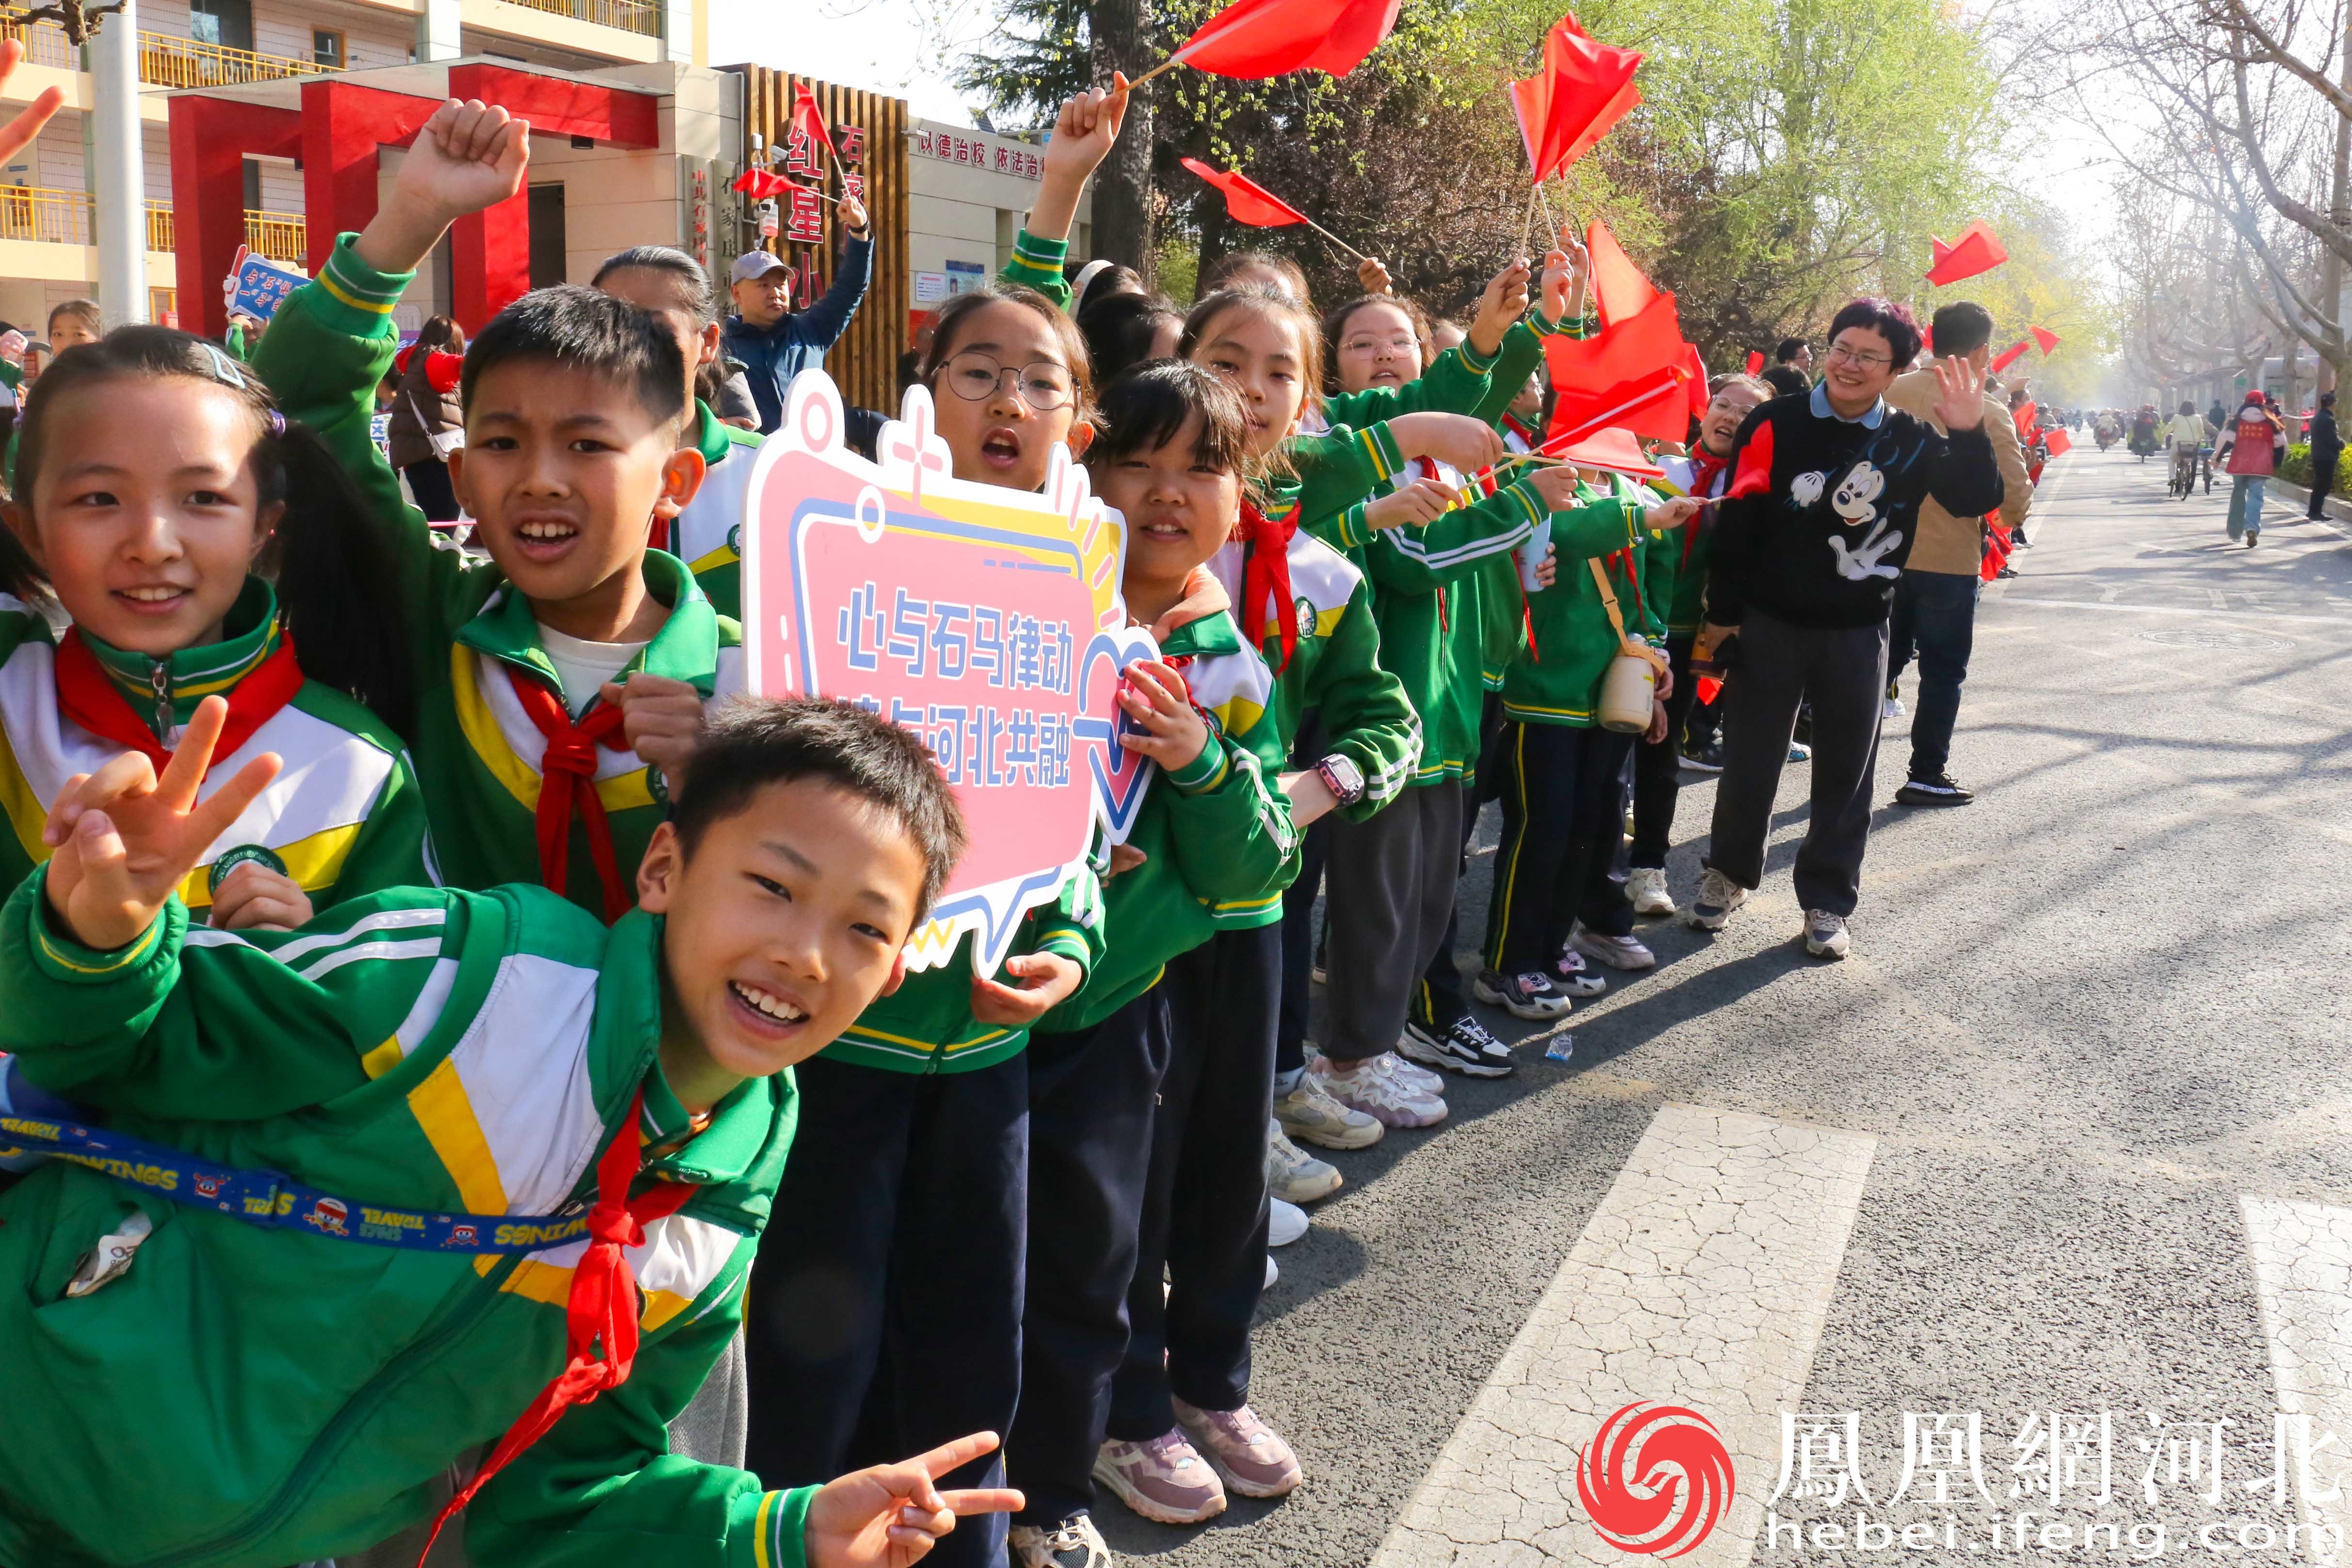 小学生们自发地聚集在赛道旁，为参赛选手们加油助威。他们穿着整齐的校服，手持小旗子和标语，脸上洋溢着兴奋和期待的笑容。